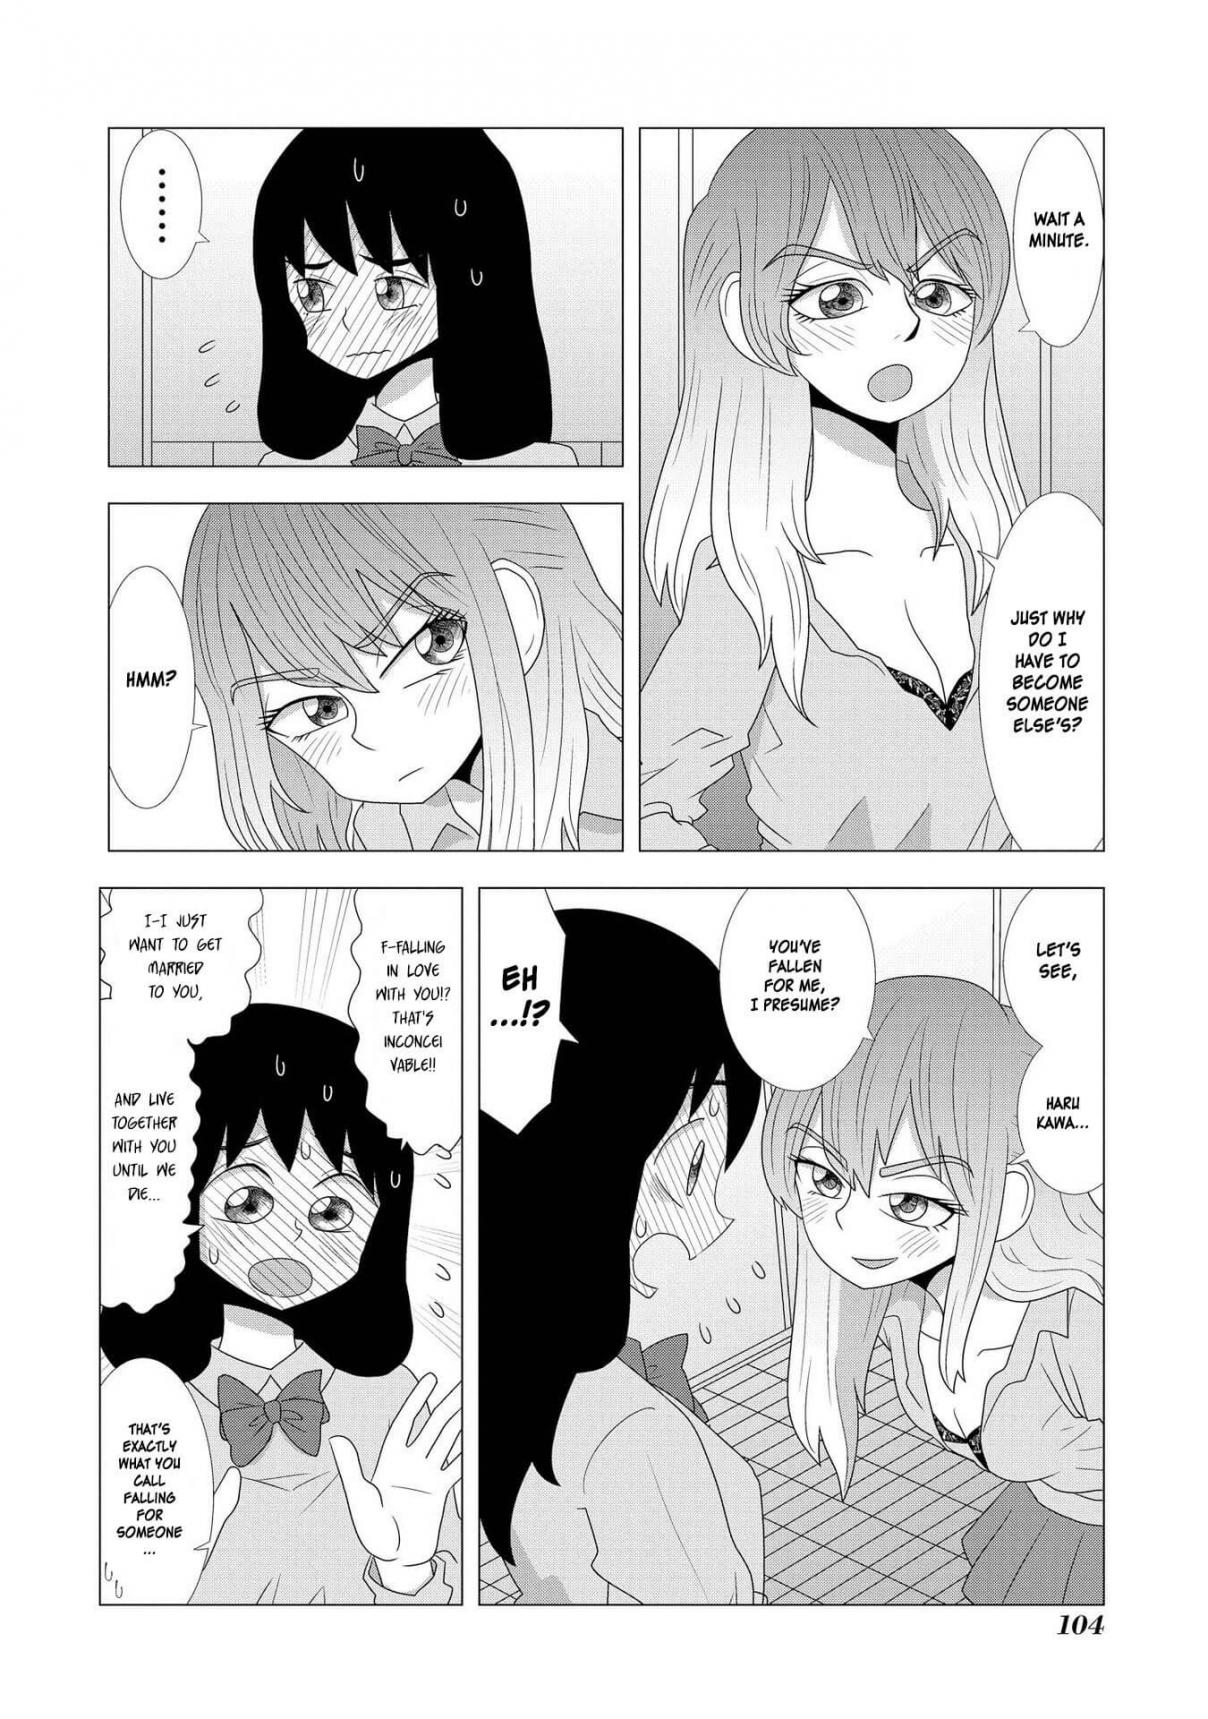 Hyottoshite Gyaru wa Orera ni Yasashii no Dewa? Anthology Comic Vol. 3 Ch. 21 I want to be bullied by a Gal like her!